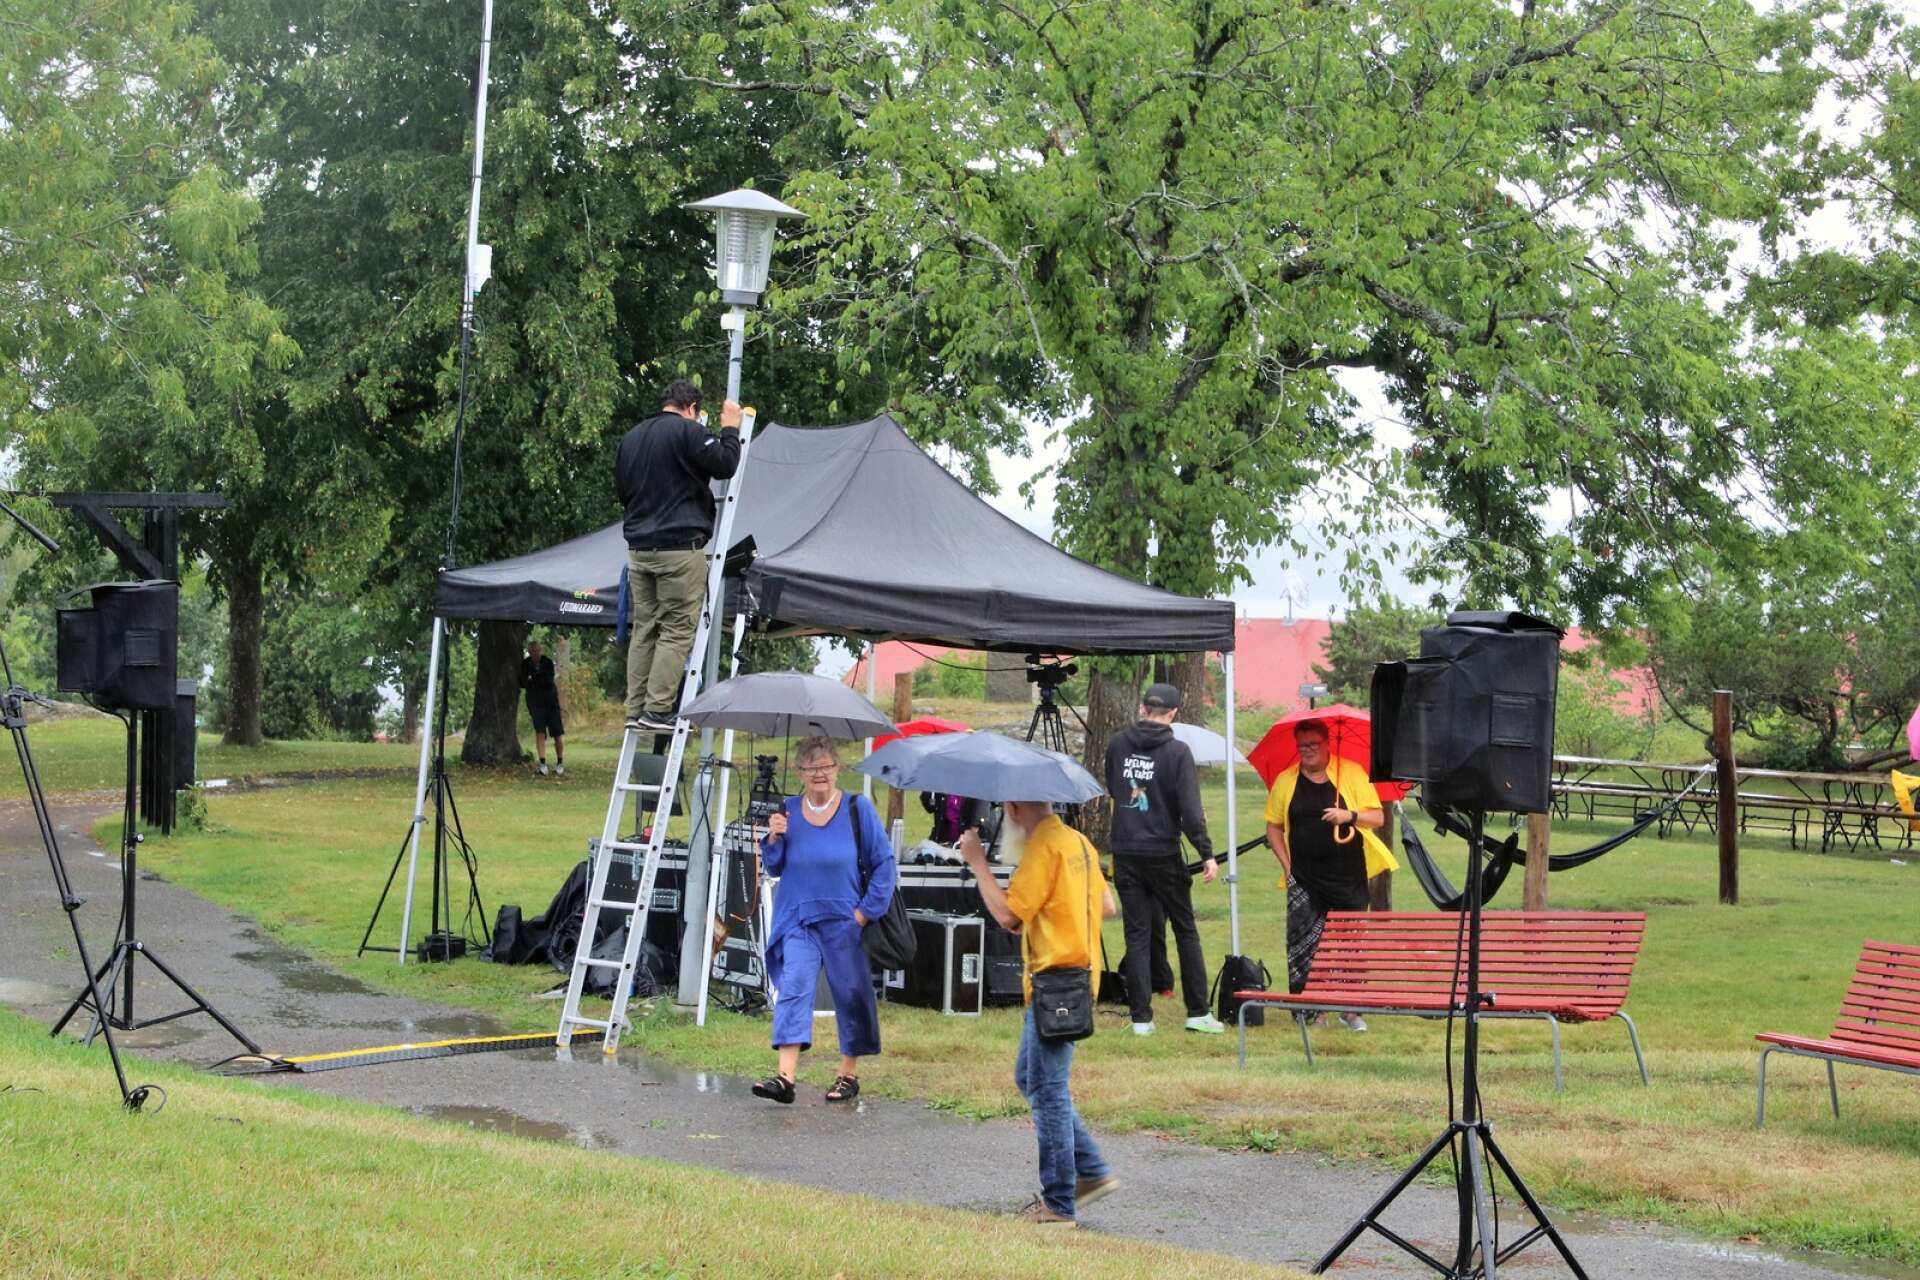 Tälttaket skyddade inte nämnvärt när regnet blåste in från sidan. Publiken försökte hjälpa till med sina paraplyer, men det var bara för Bobby Svanér dela Cruz och Sebastian Ferger från Ljudmakaren att börja packa ihop för att åka hem och torka utrustningen.